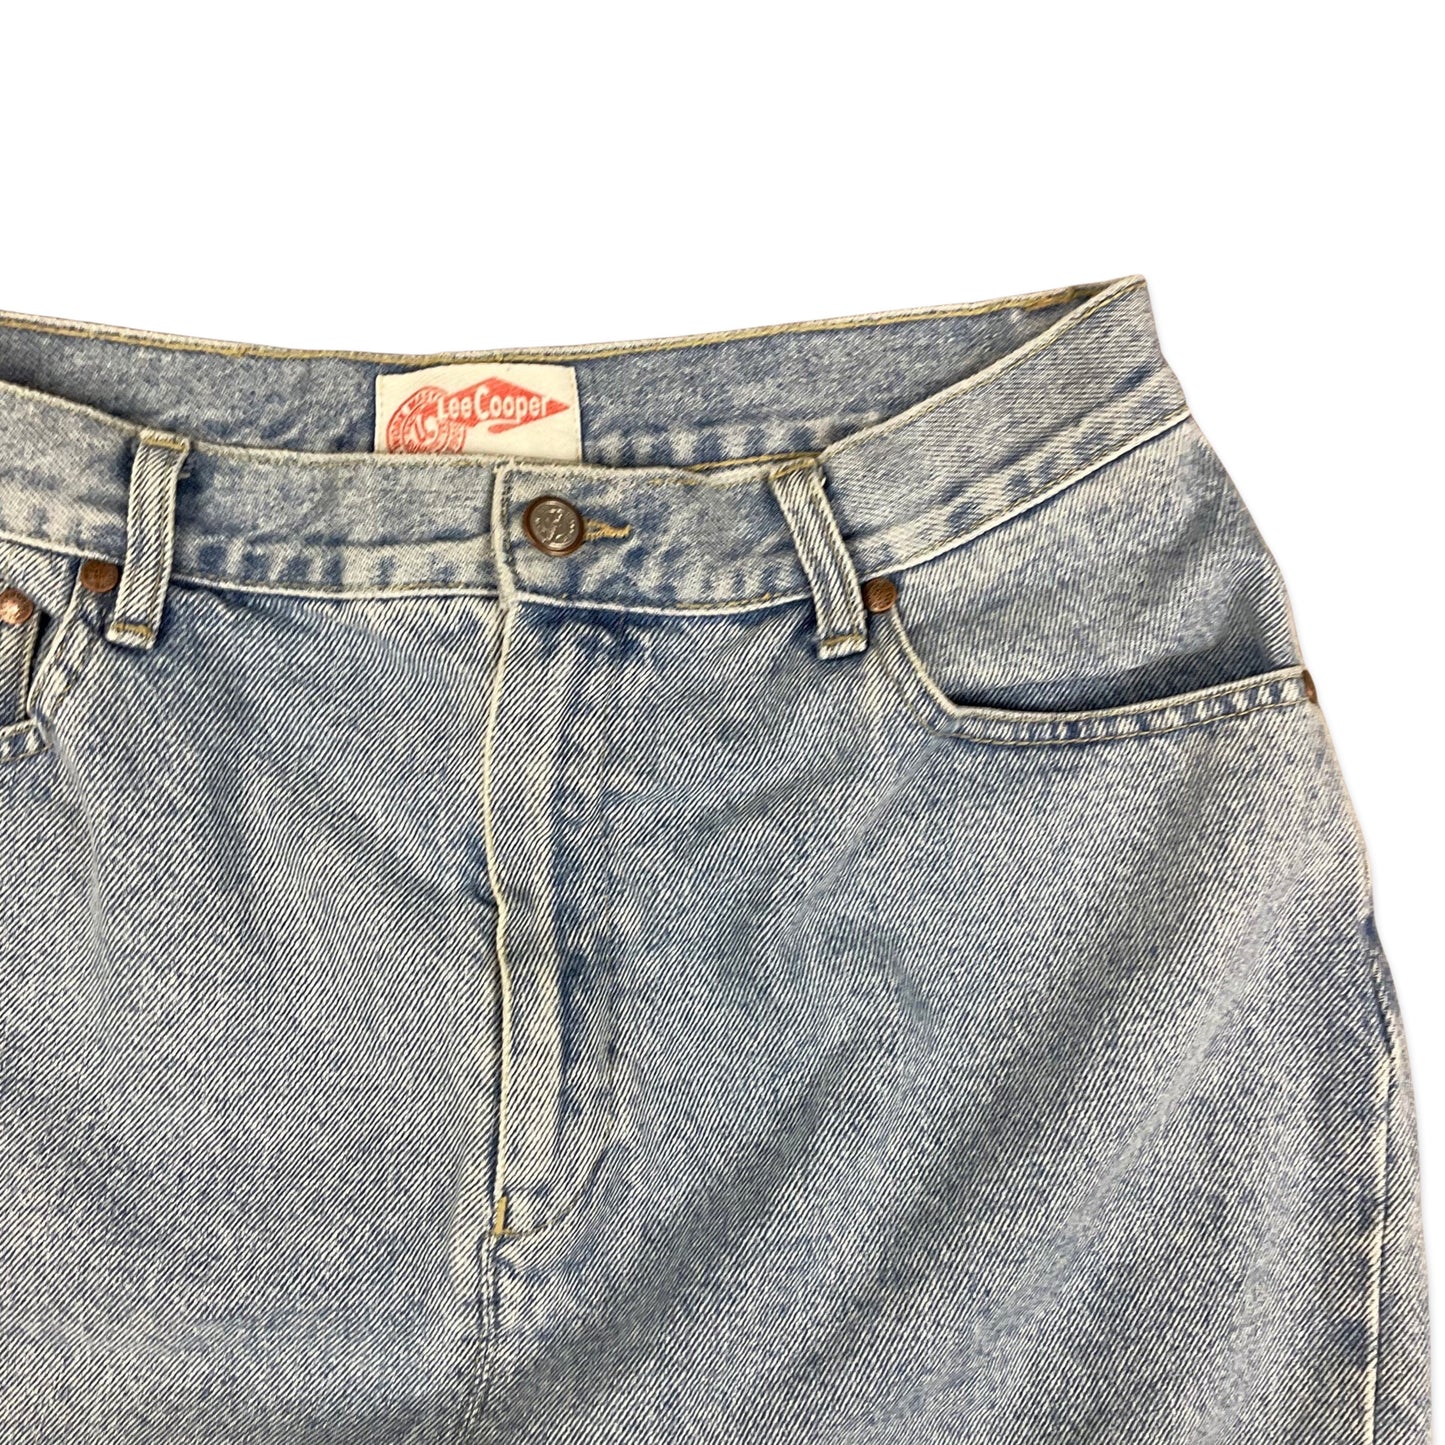 Vintage Lee Cooper Denim Mini Skirt 12 14